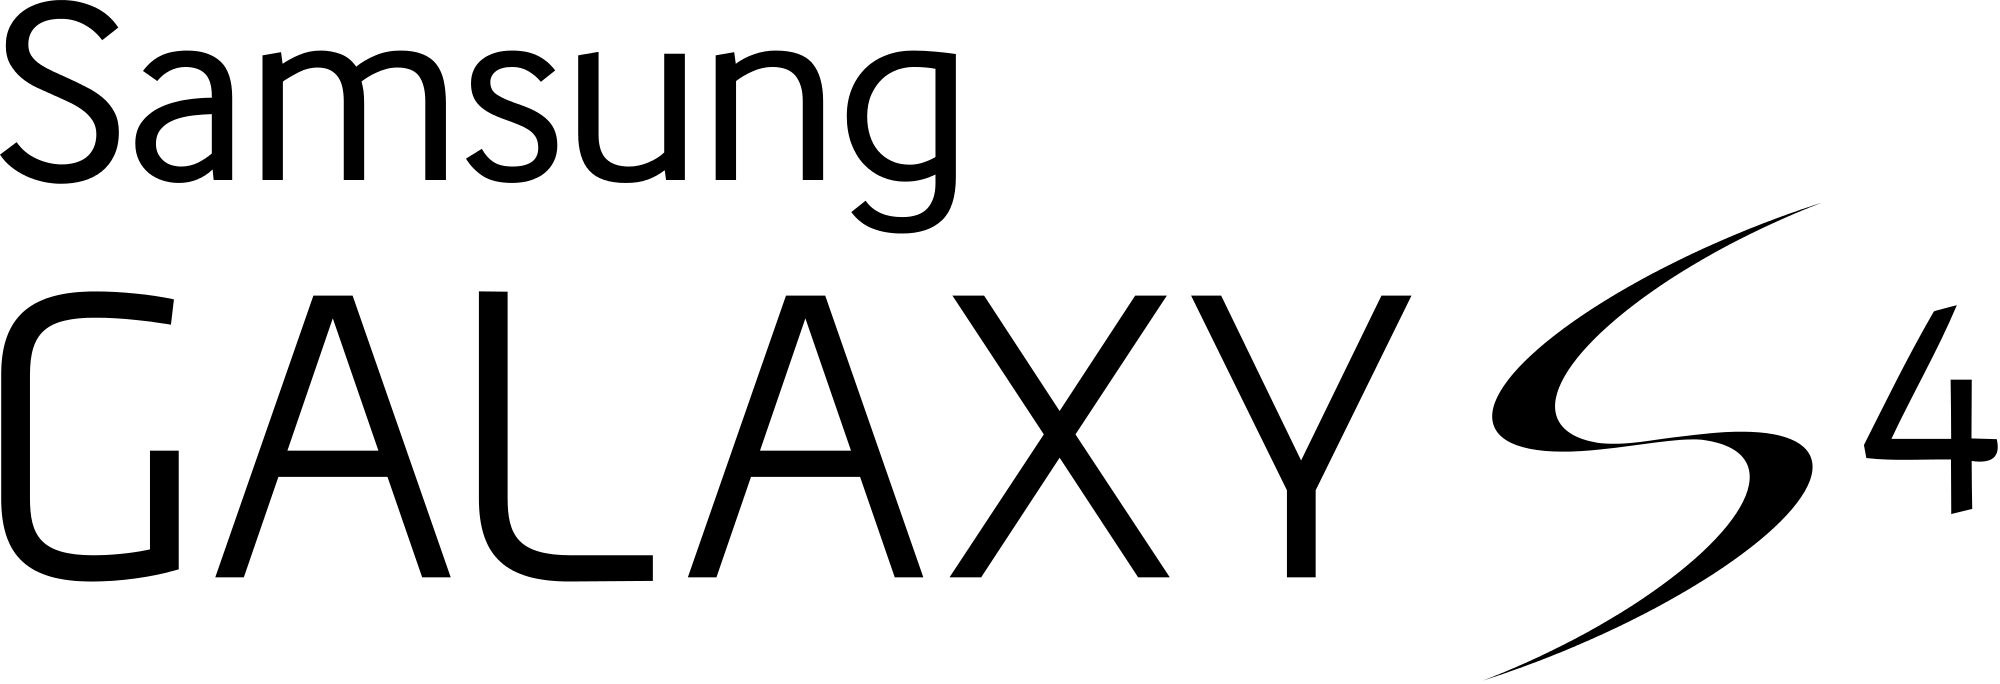 Samsung Galaxy S4 Logo - Samsung Galaxy S4 logo.svg